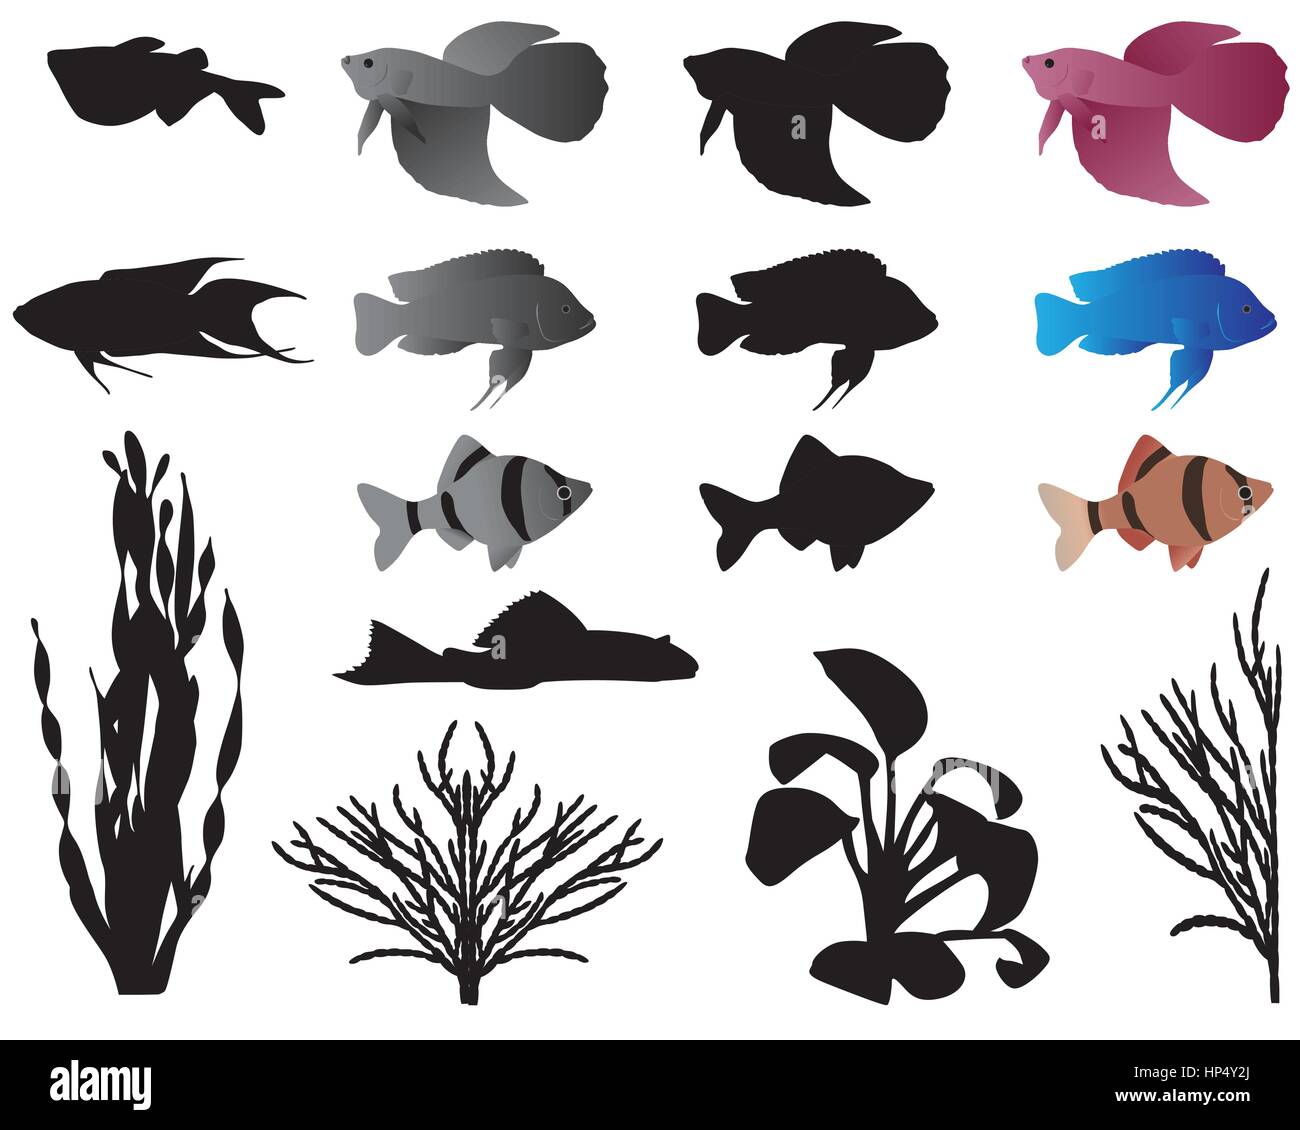 Les poissons et les algues pour aquarium, silhouettes et images en couleur Illustration de Vecteur